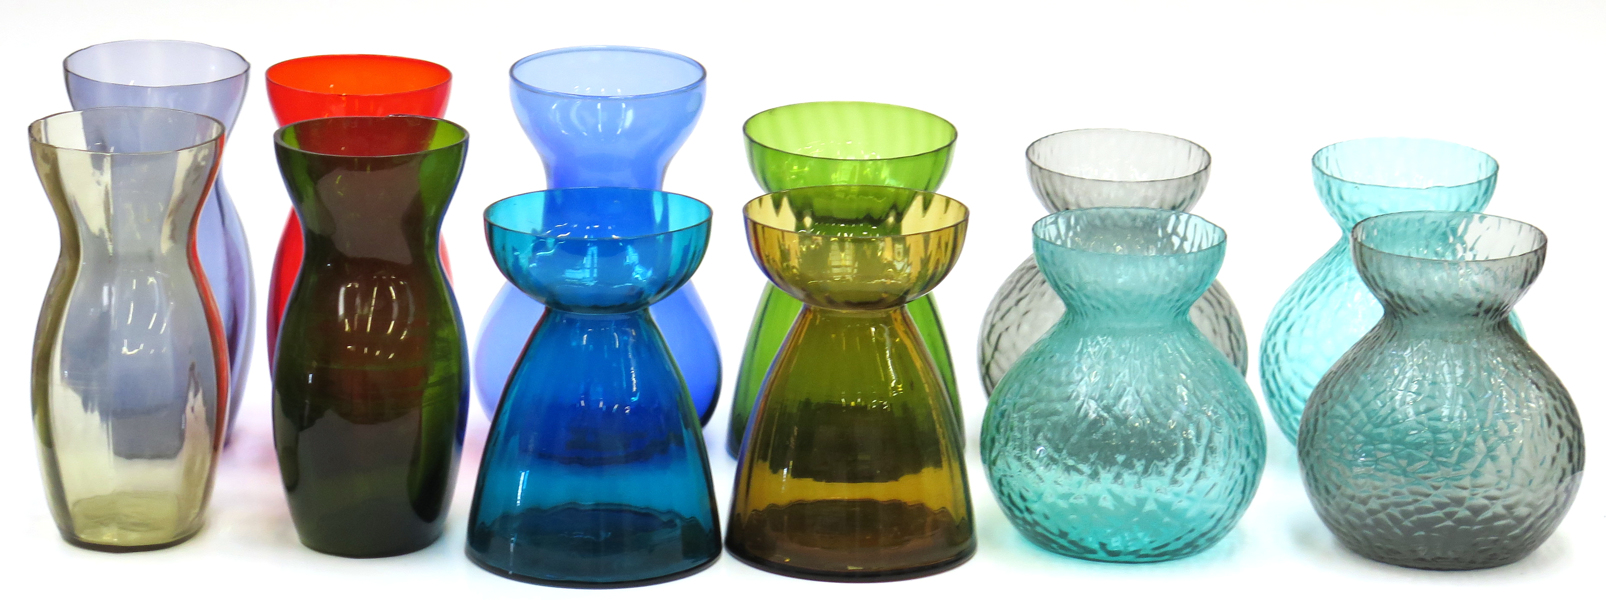 Vaser för tulpanlökar, 5 + 4 + 3 st, olikfärgad glasmassa, antagligen Holmegaard, 1900-tal,_1963a_8d8490c9c2ef80c_lg.jpeg